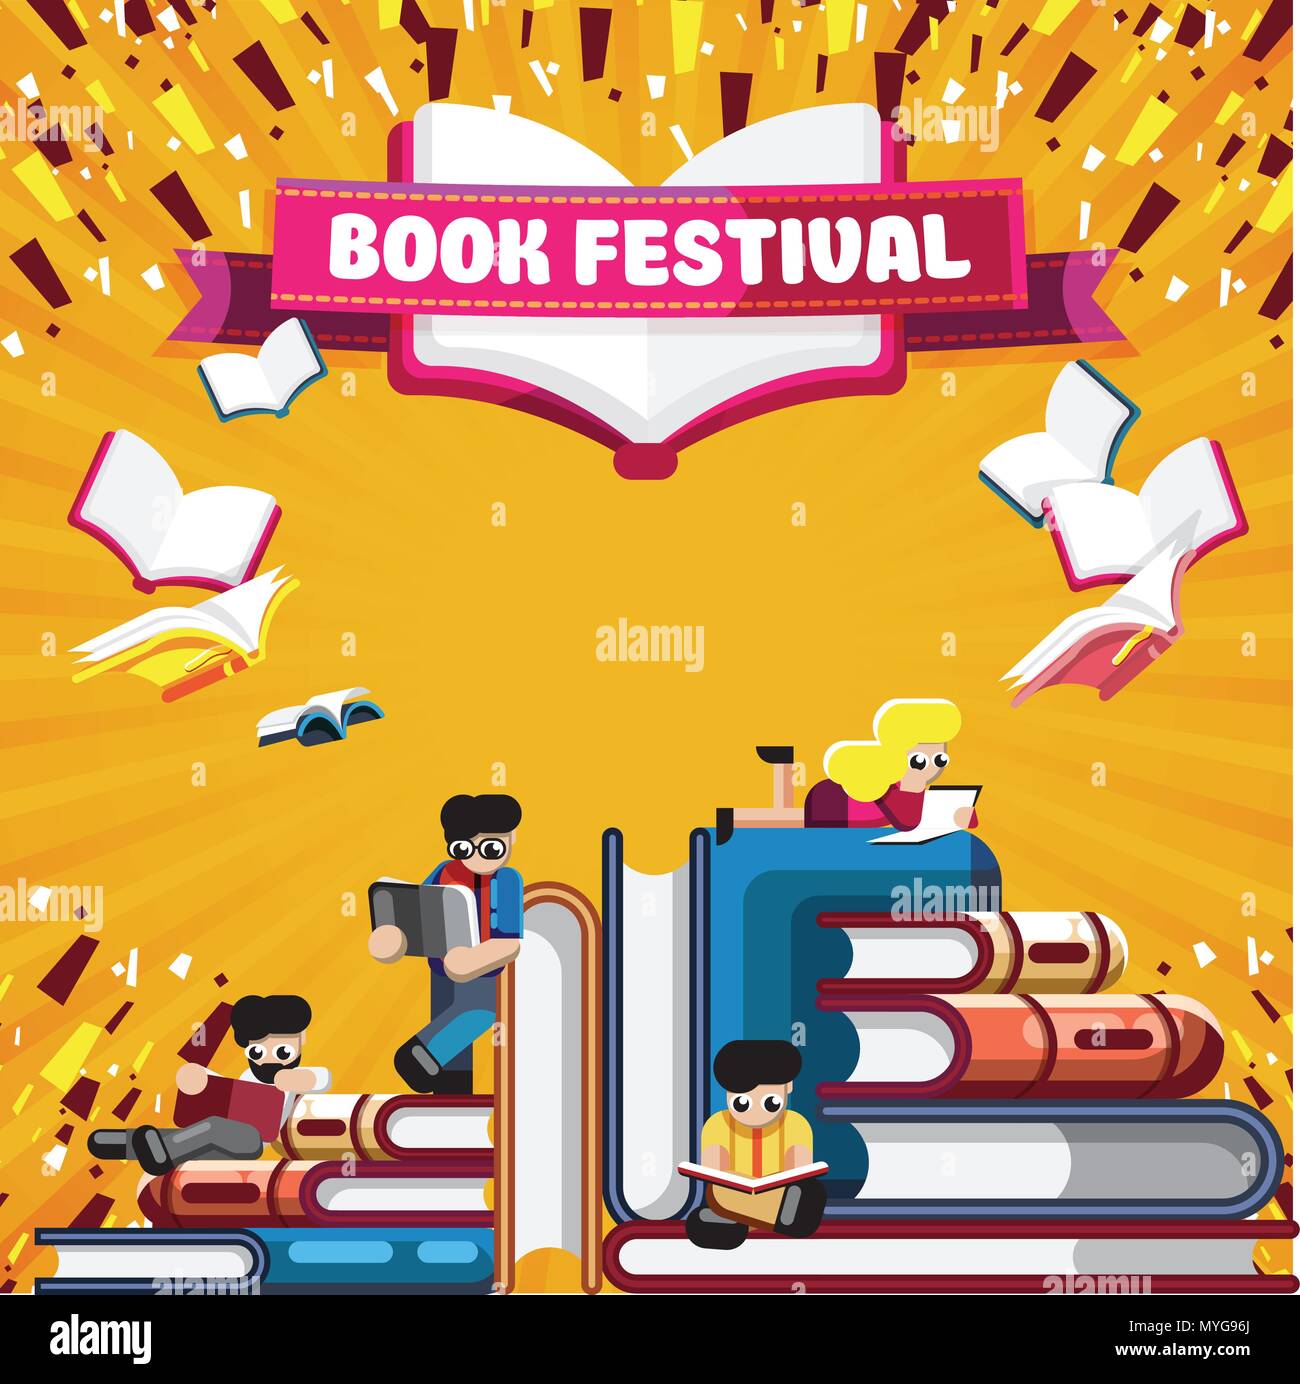 Lebendige Gestaltung der Poster für Book Festival Stock Vektor